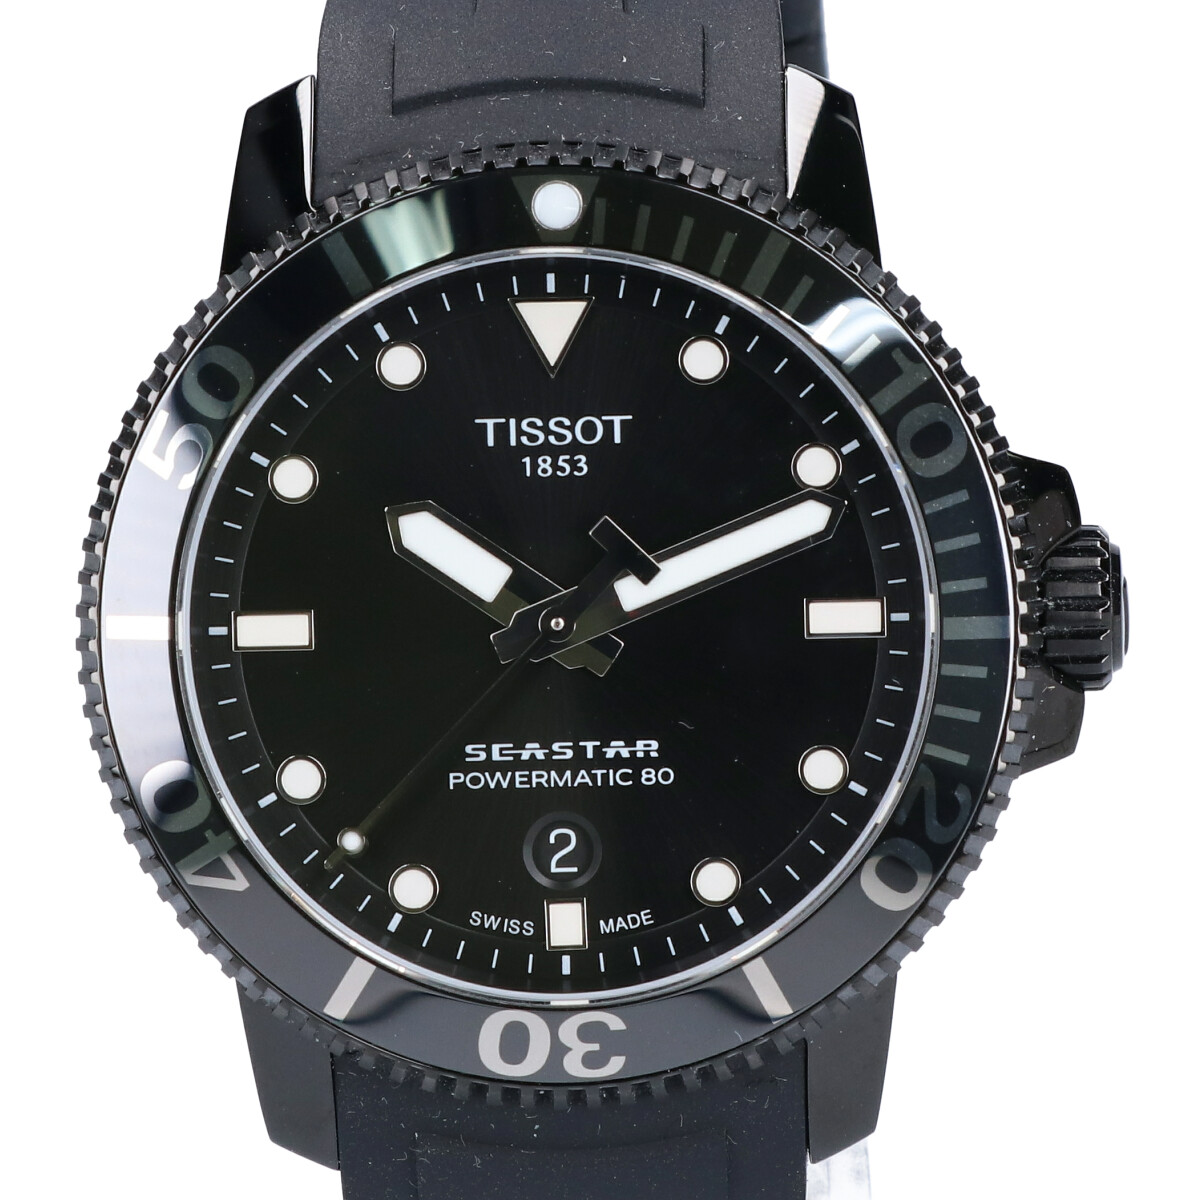 ティソのT120.407.37.051.00 SEASTAR 1000 POWERMATIC 80 シースター1000 自動巻き時計の買取実績です。